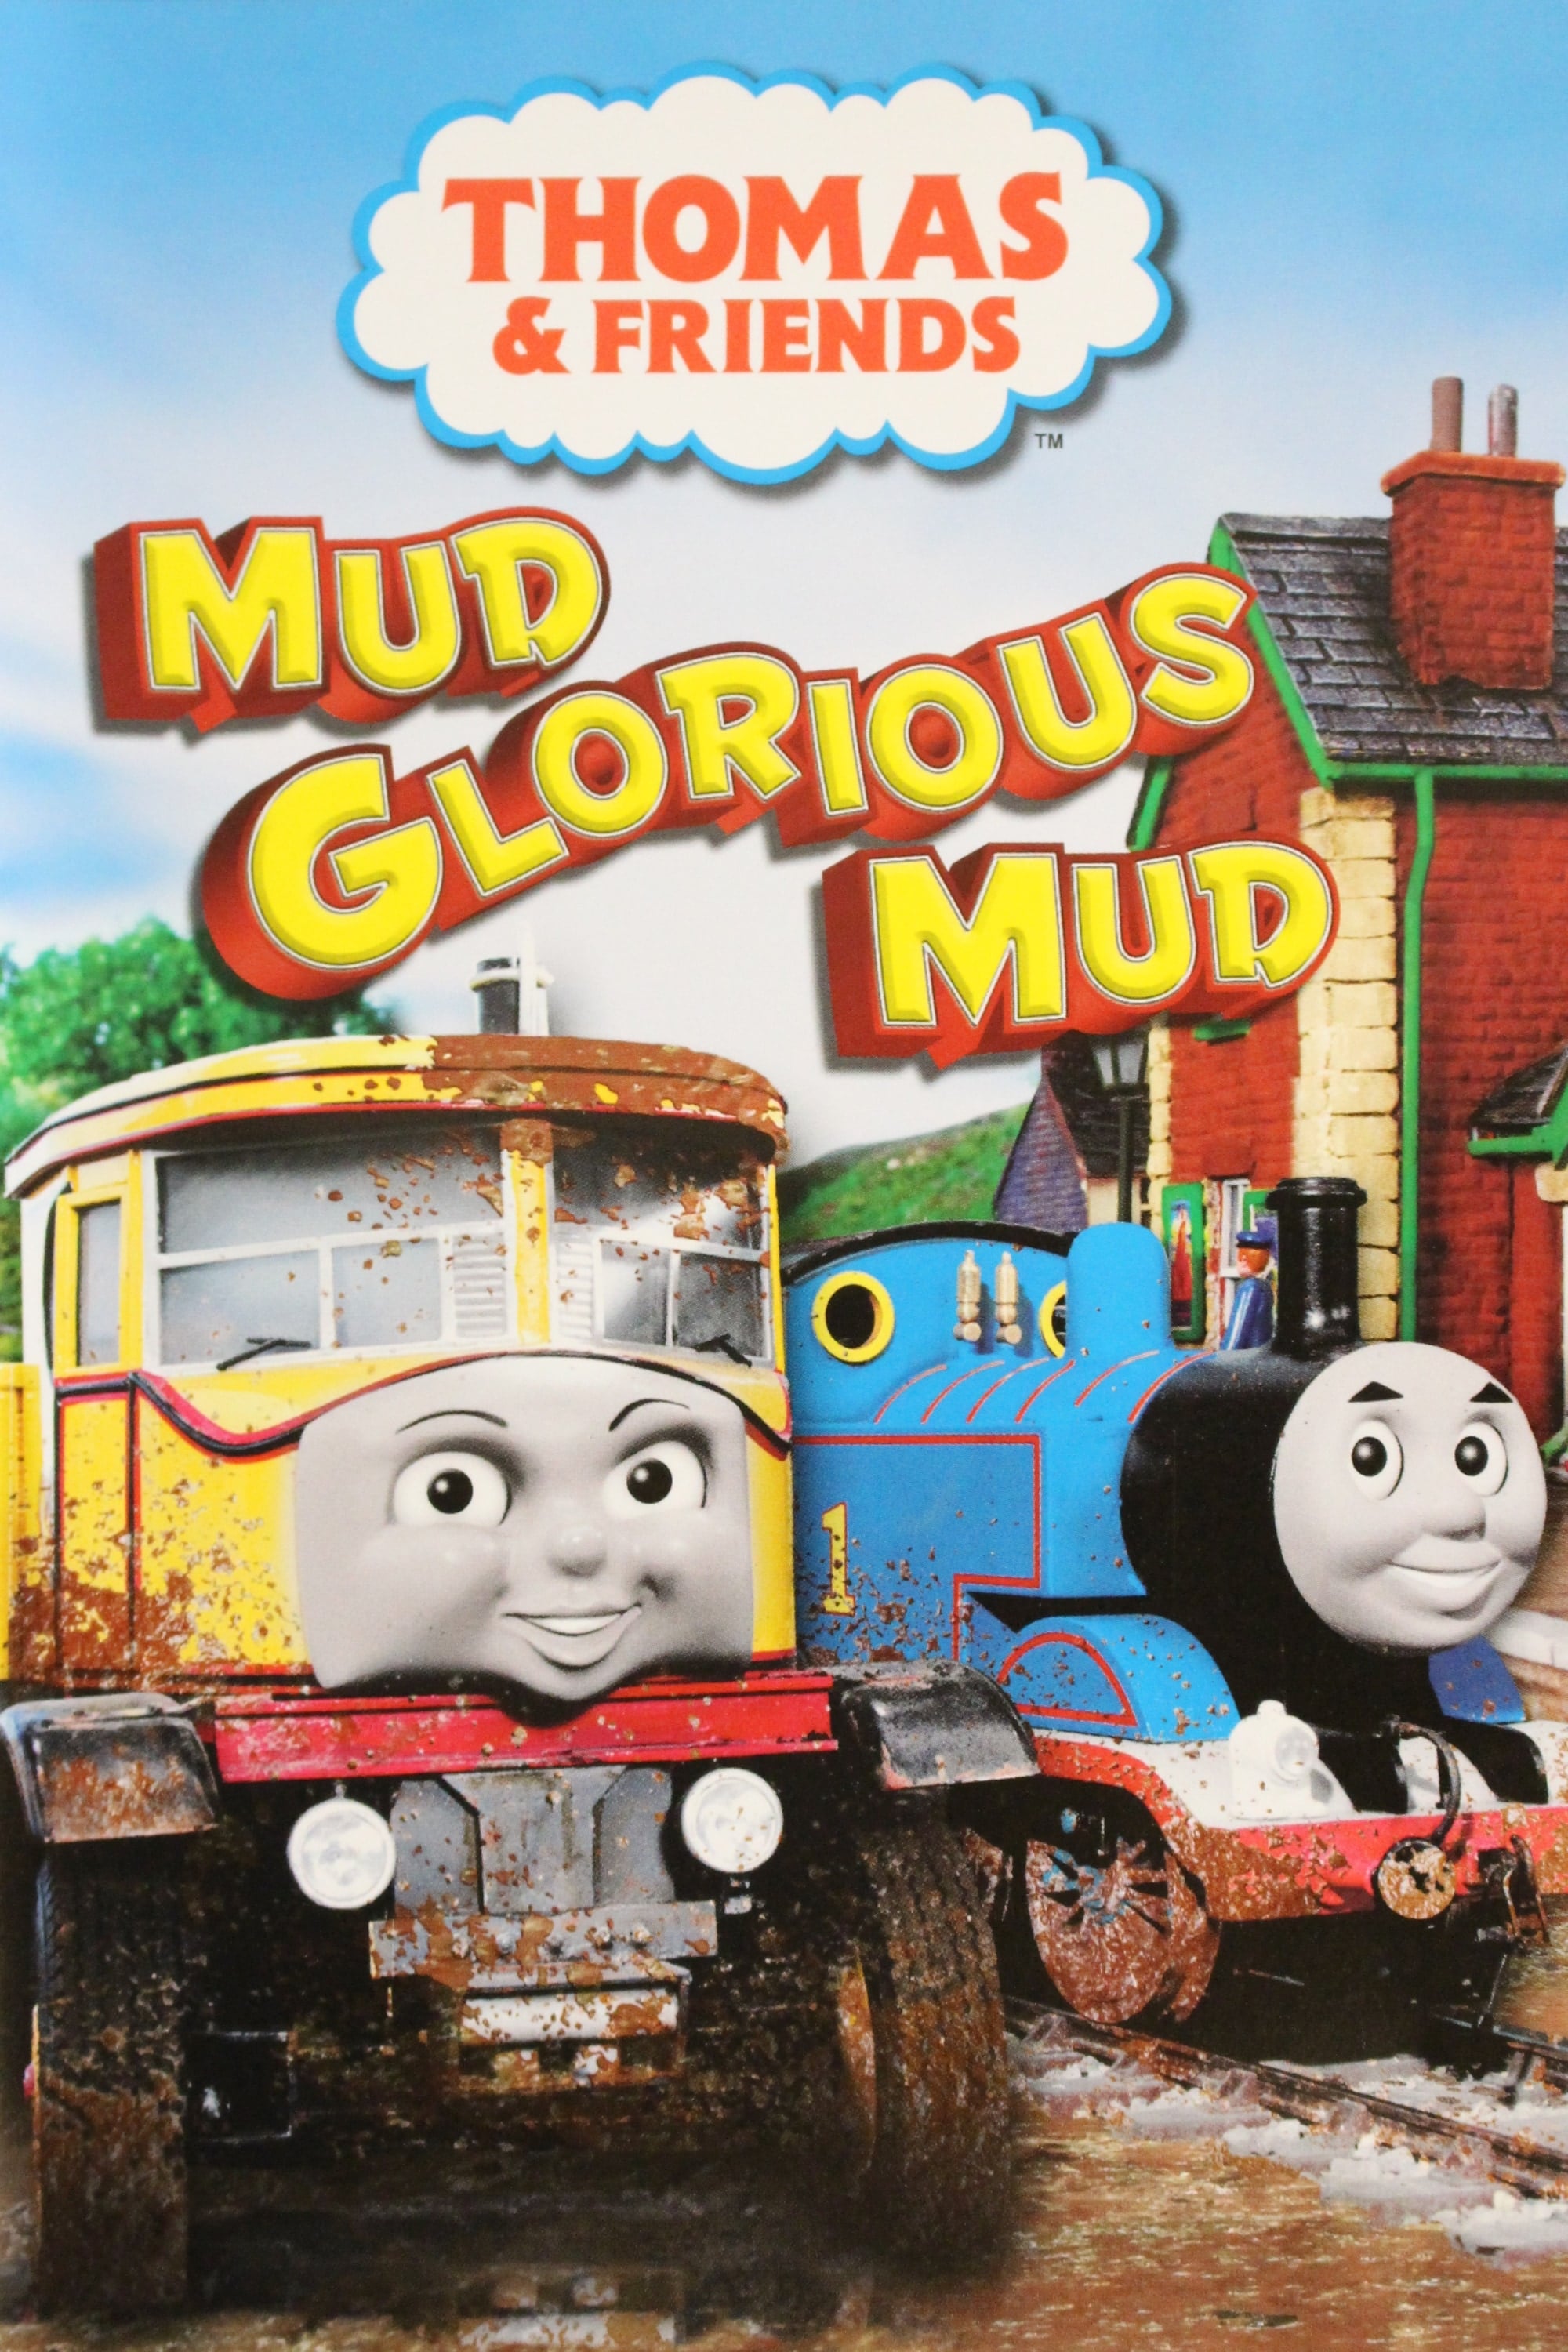 Thomas & Friends - Mud Glorious Mud (2008)